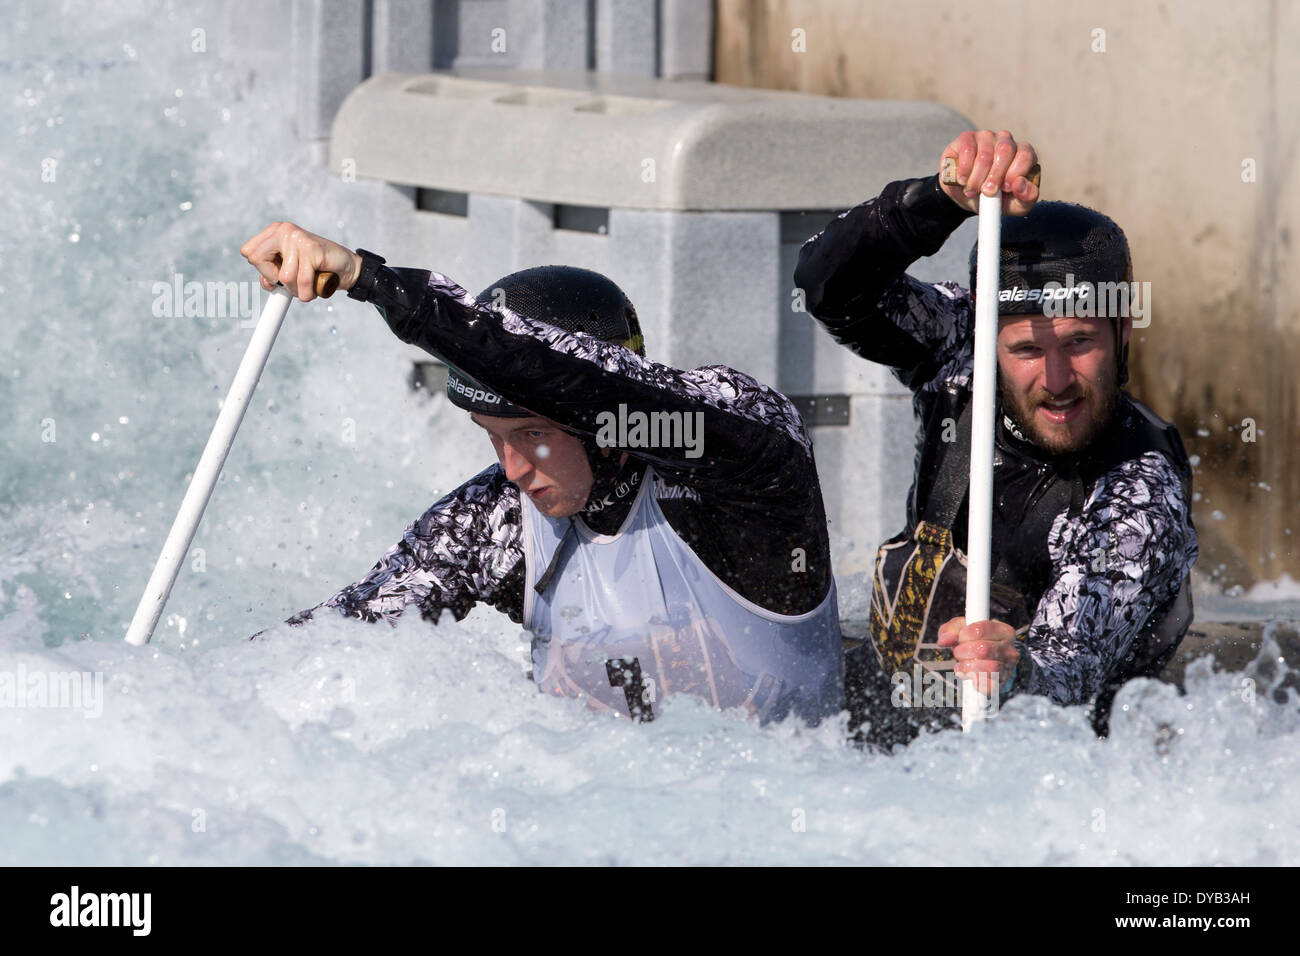 Rhys DAVIES & Matt LISTER, eine endgültige C2 Männer GB Kanu Slalom 2014 Auswahl Studien Lee Valley White Water Centre, London, UK Stockfoto